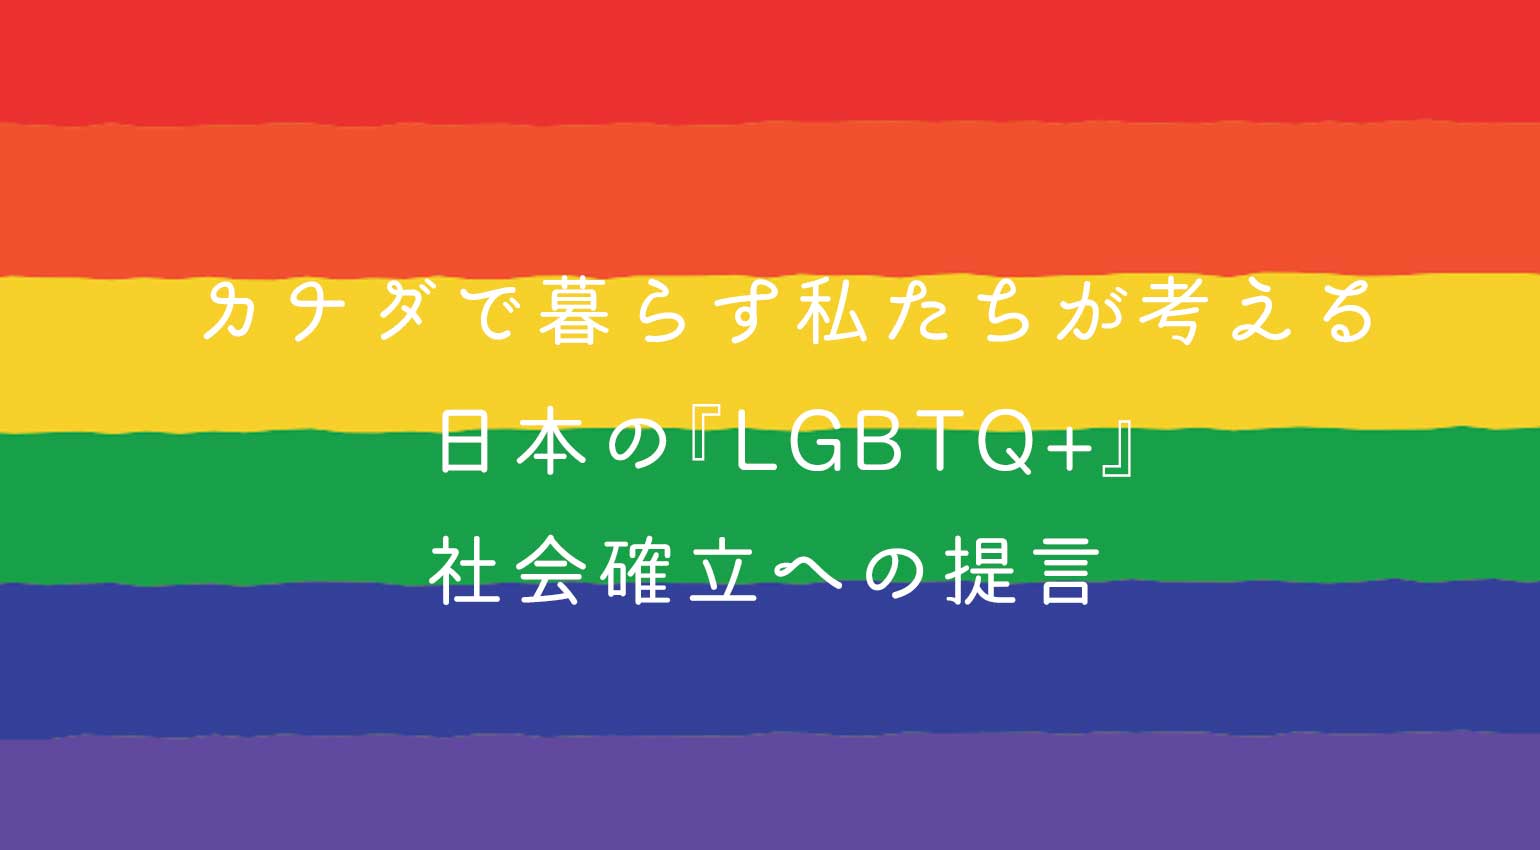 カナダで暮らす私たちが考える日本の『LGBTQ+』社会確立への提言